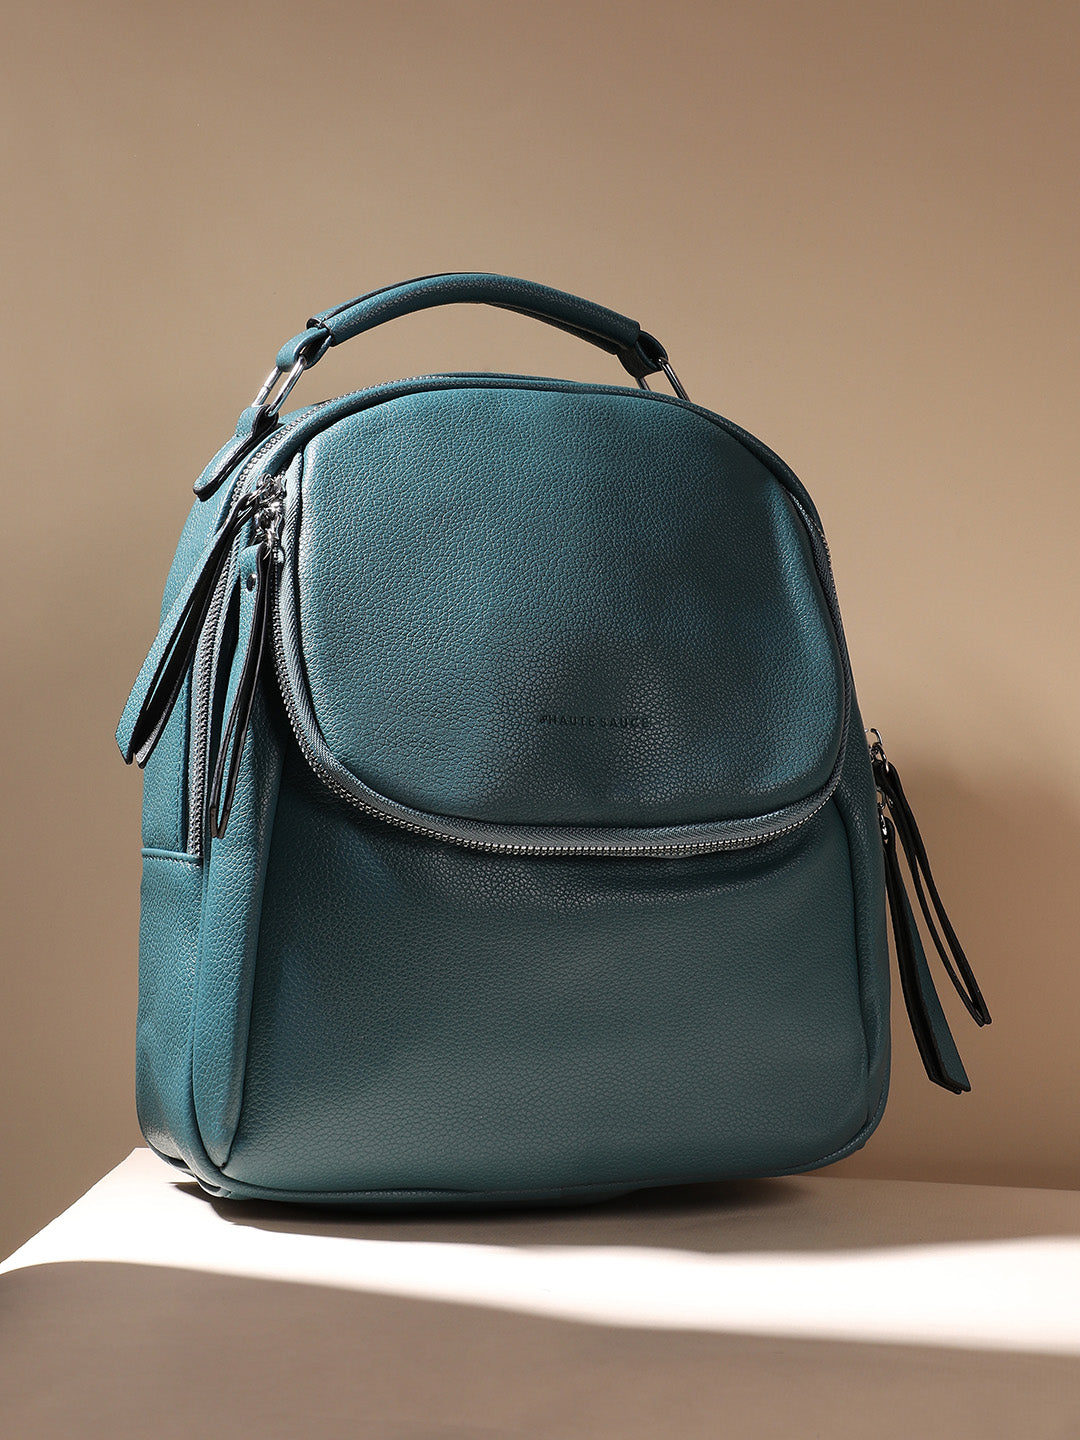 City Mini Backpack - Teal Blue